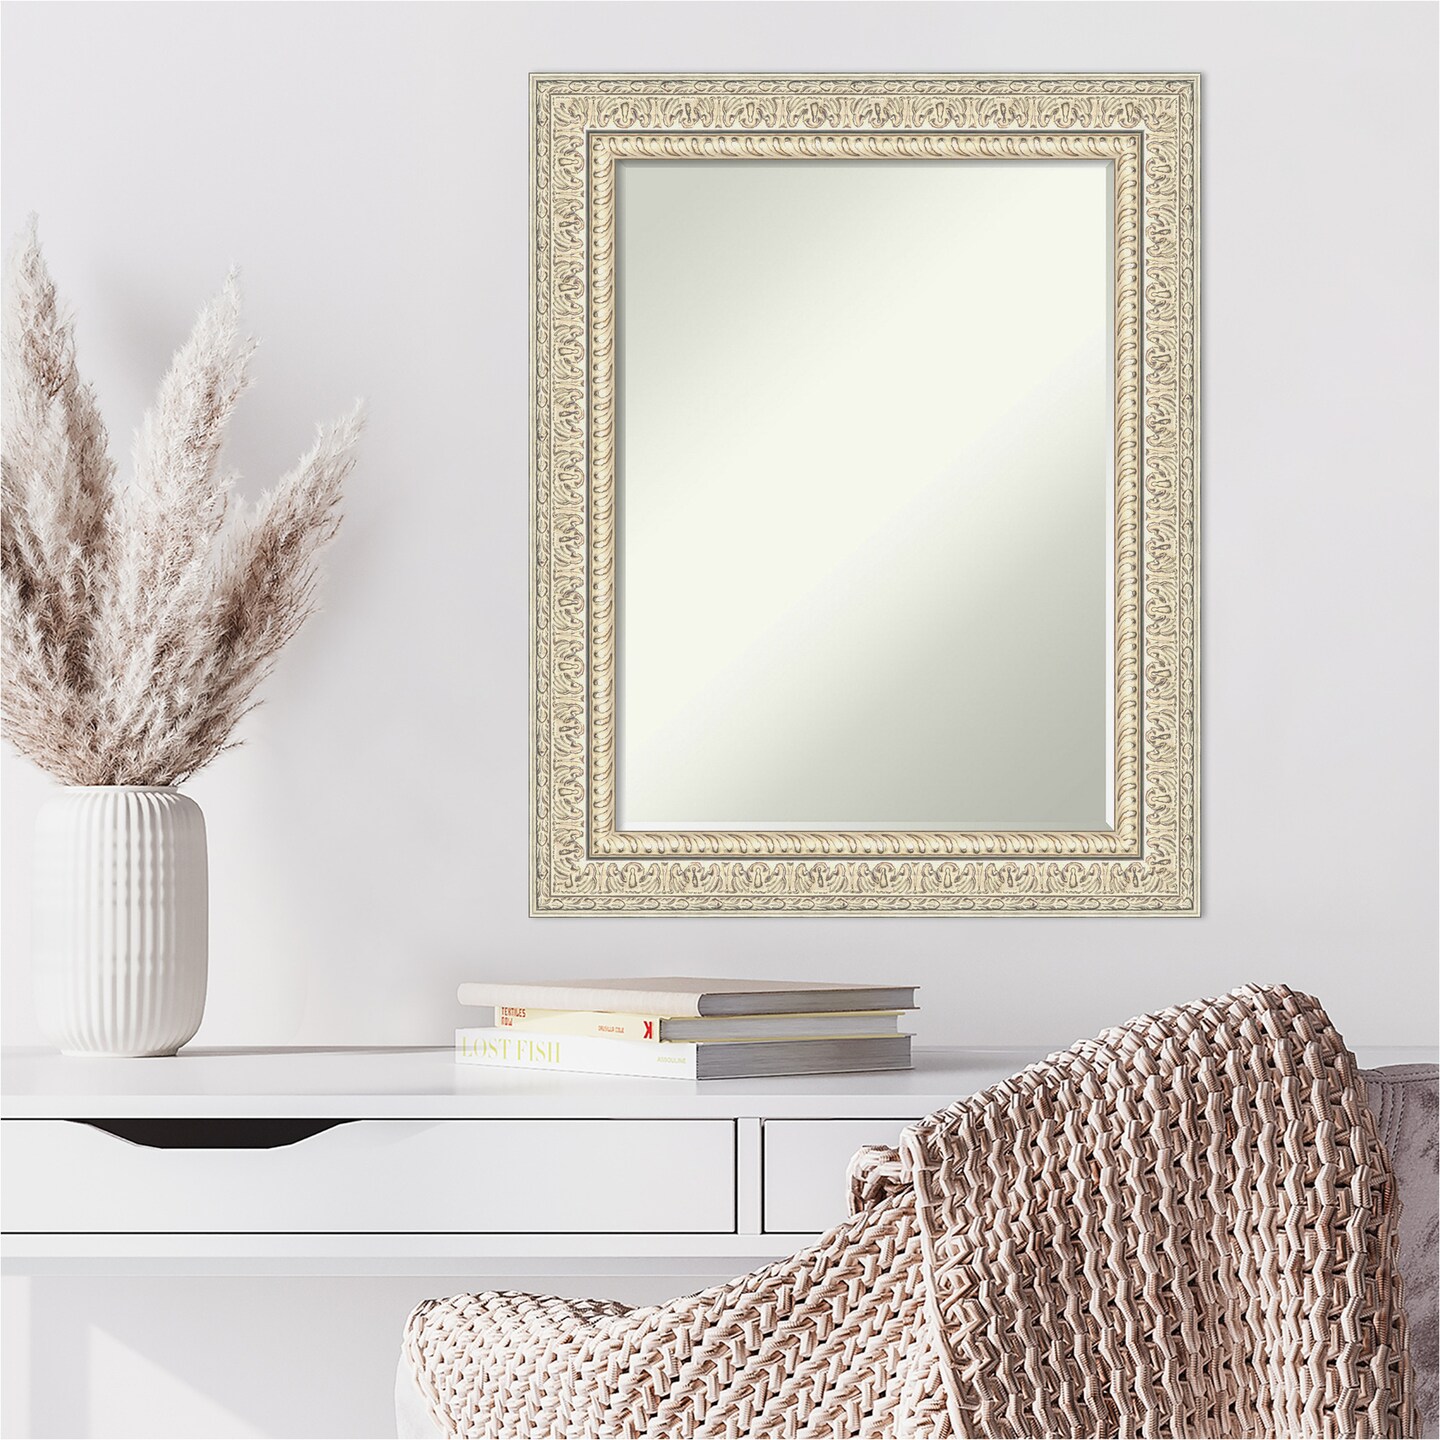 Petite Bevel Wood Wall Mirror, Fair Baroque Cream Frame